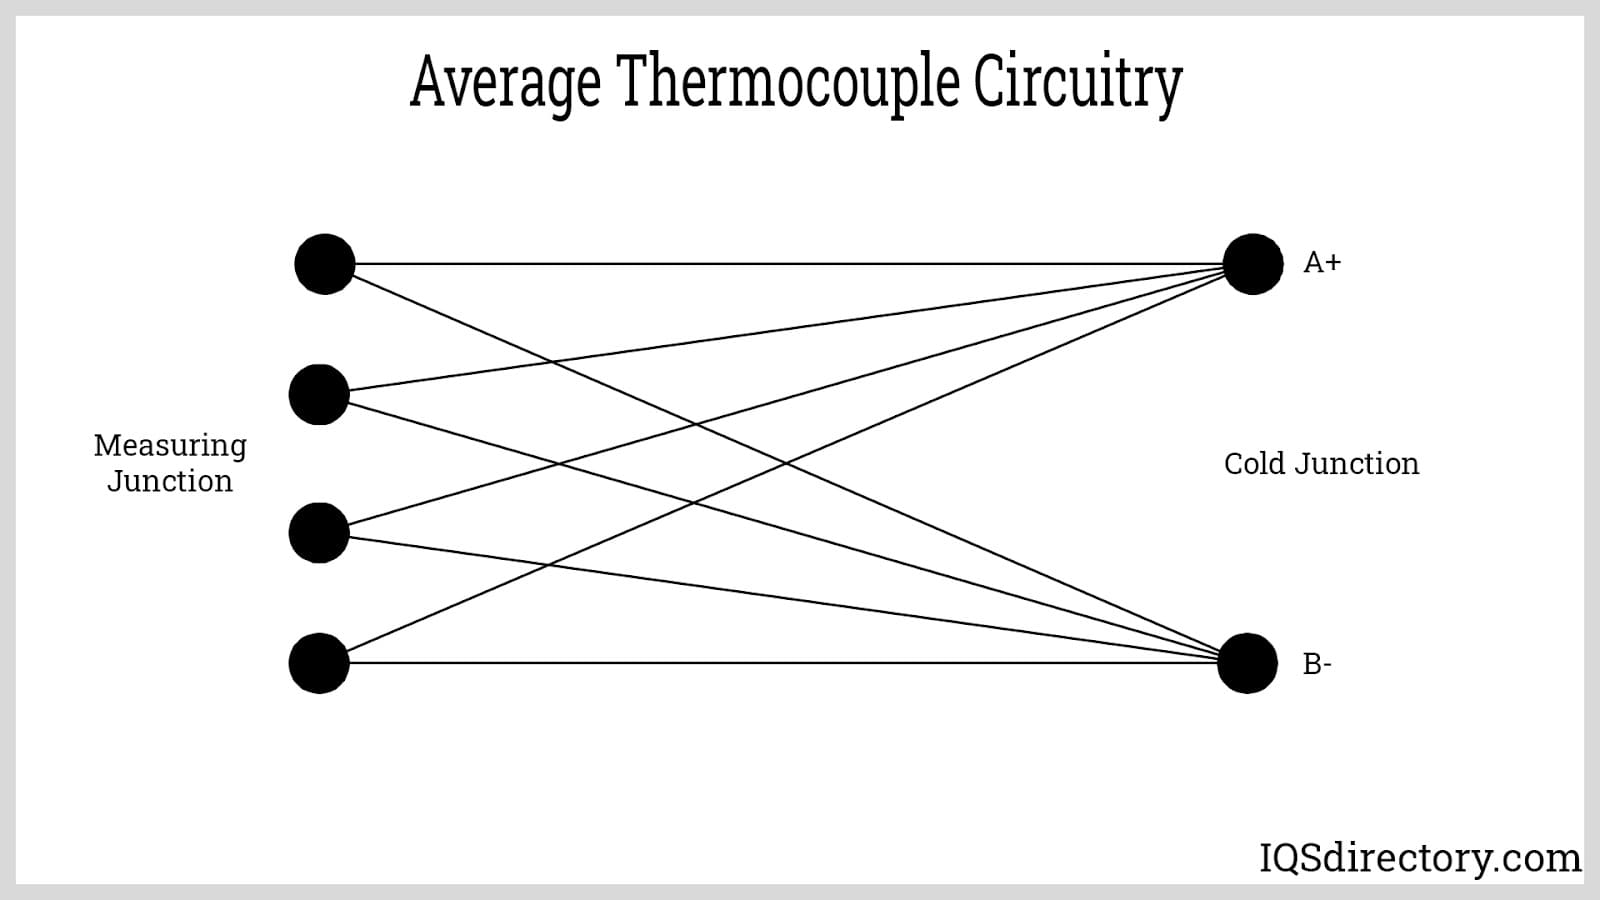 Average Thermocouple Circuitry